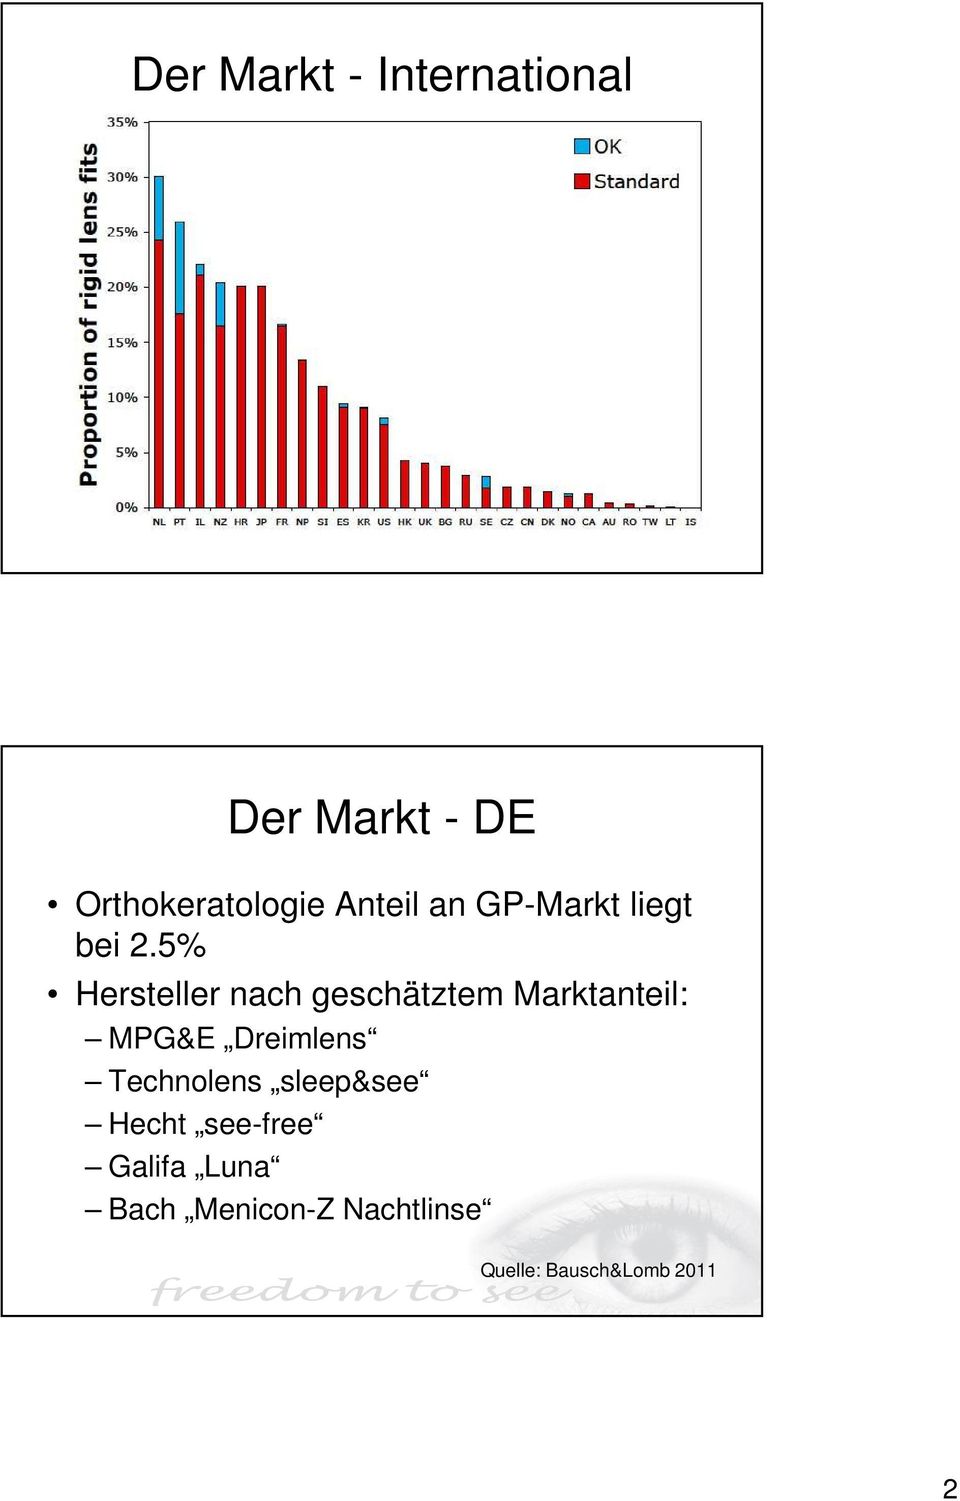 5% Hersteller nach geschätztem Marktanteil: MPG&E Dreimlens